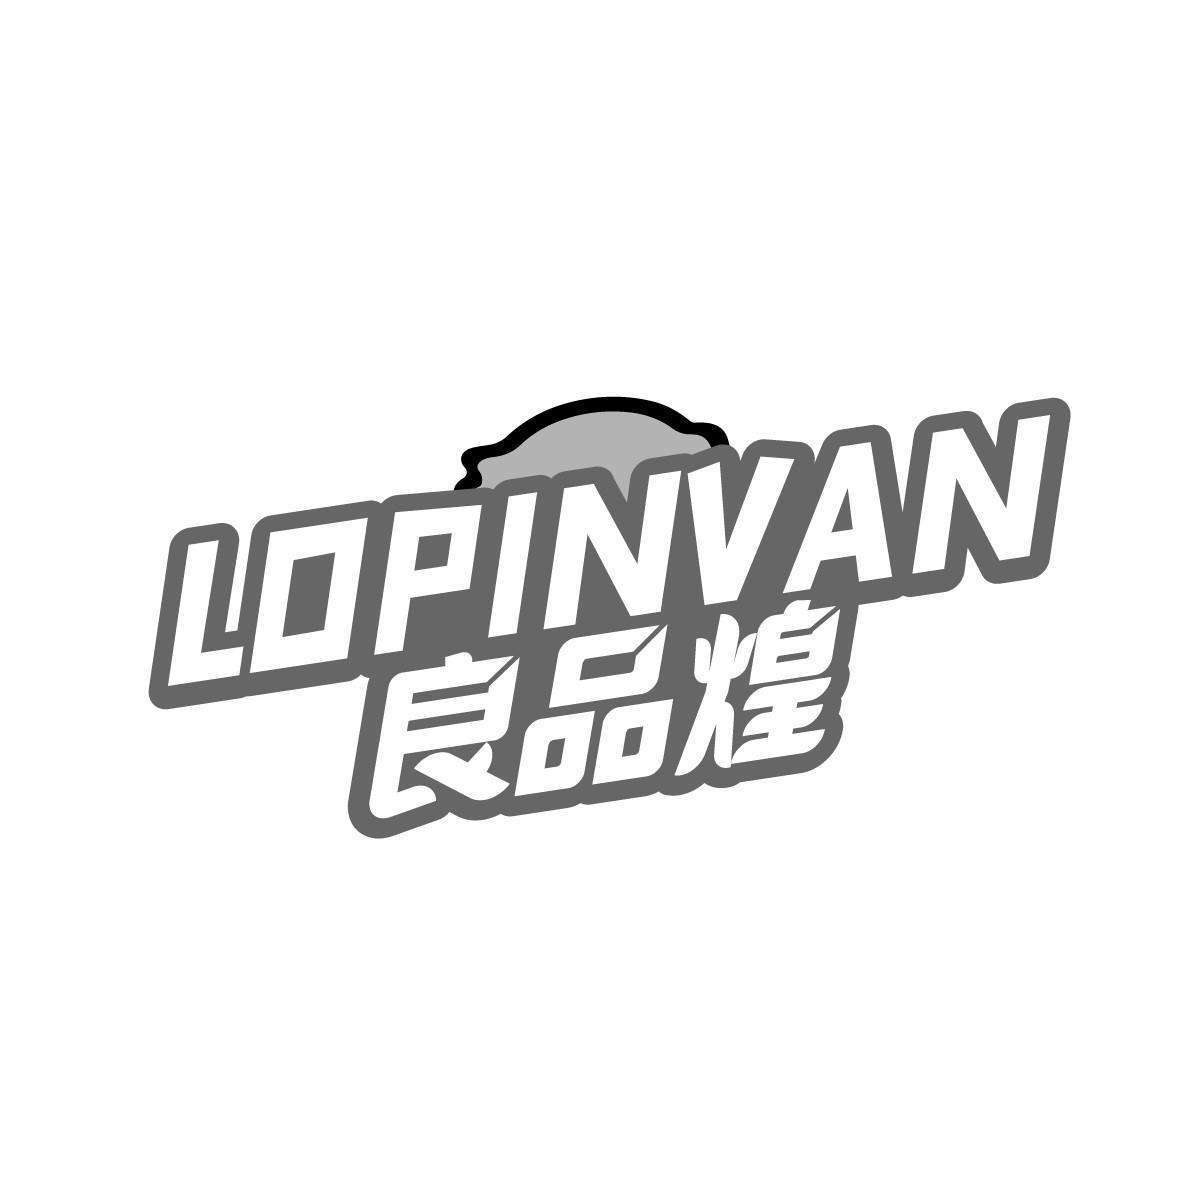 良品煌 LOPINVAN商标转让